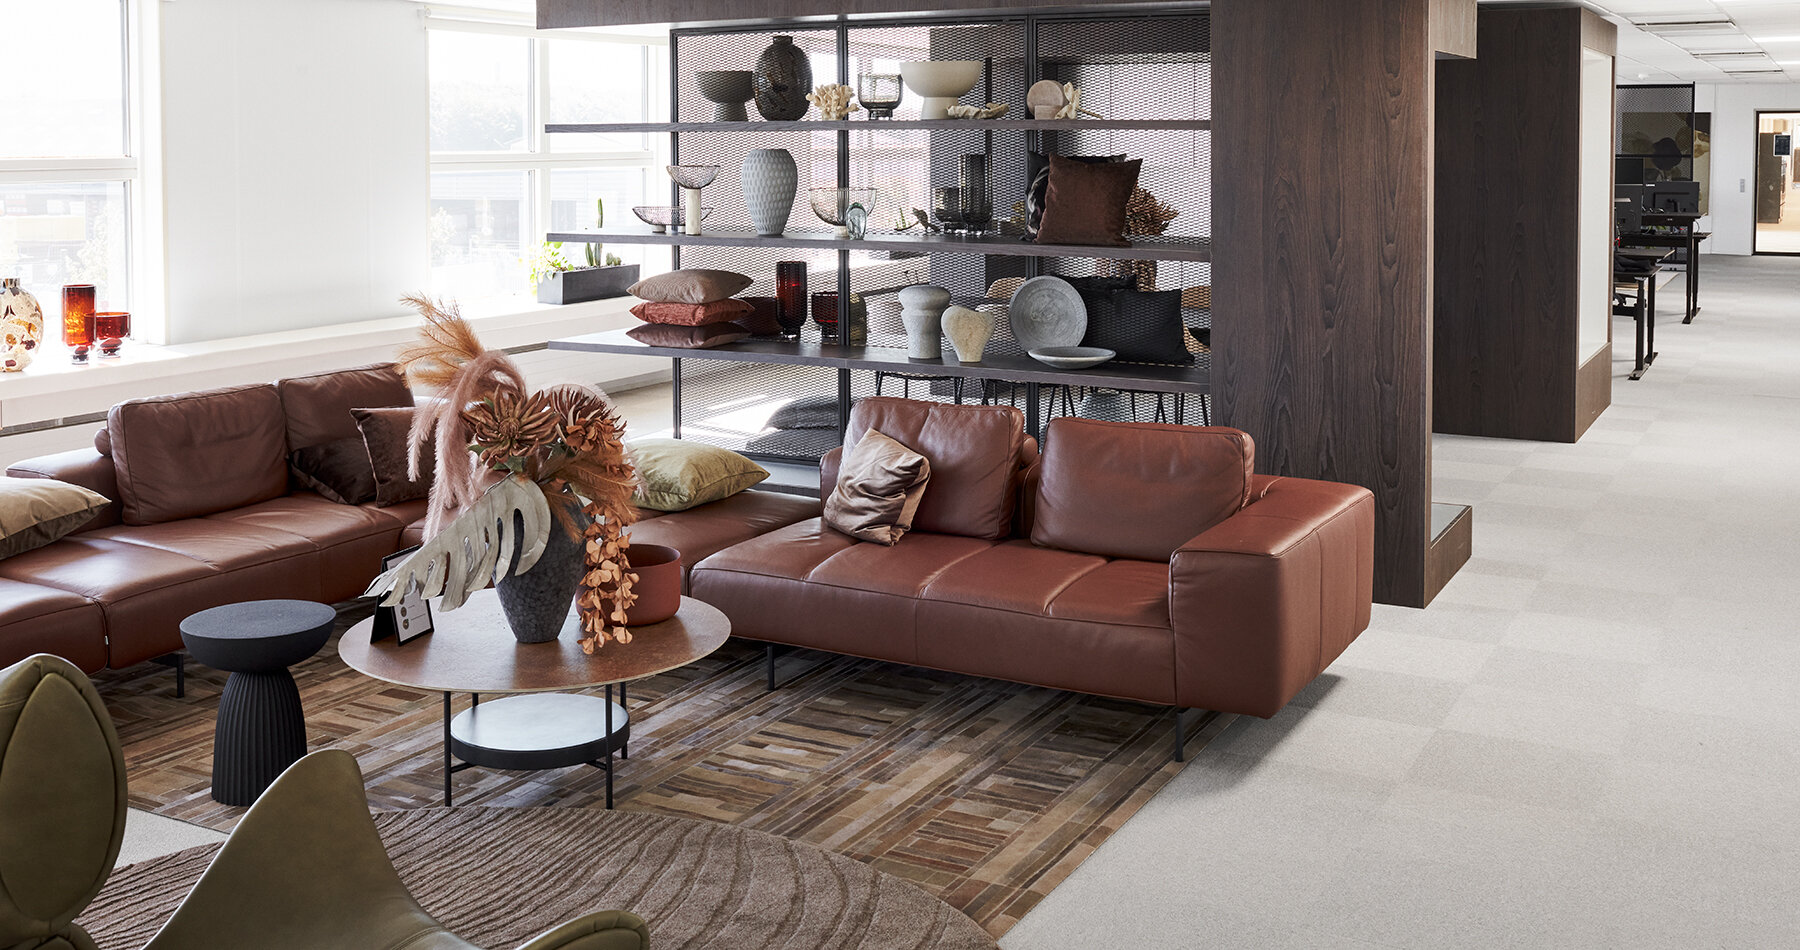 Modern home office furniture design sets - BoConcept